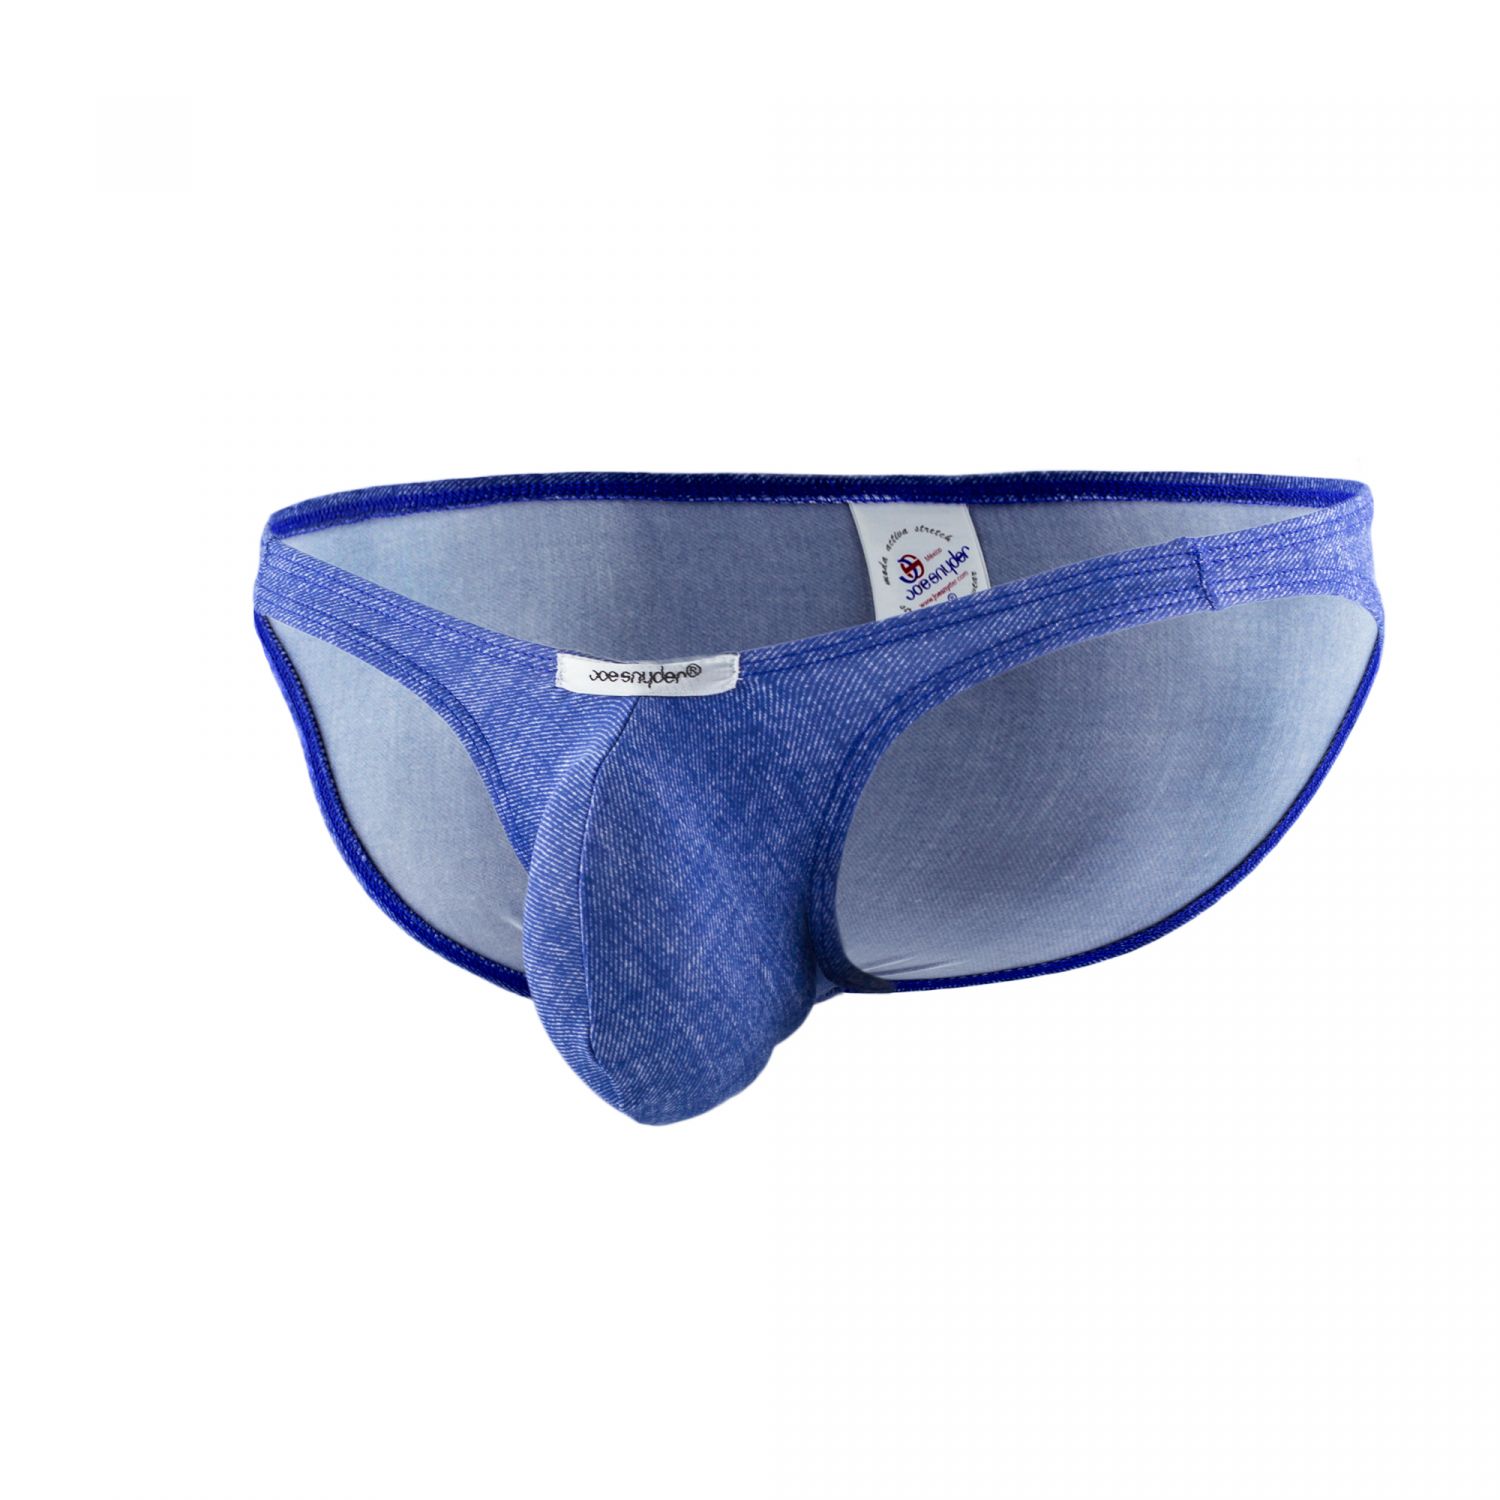 Joe Snyder Underwear Bulge Full Bikini Brief Denim Blue BUL04 | men's ...